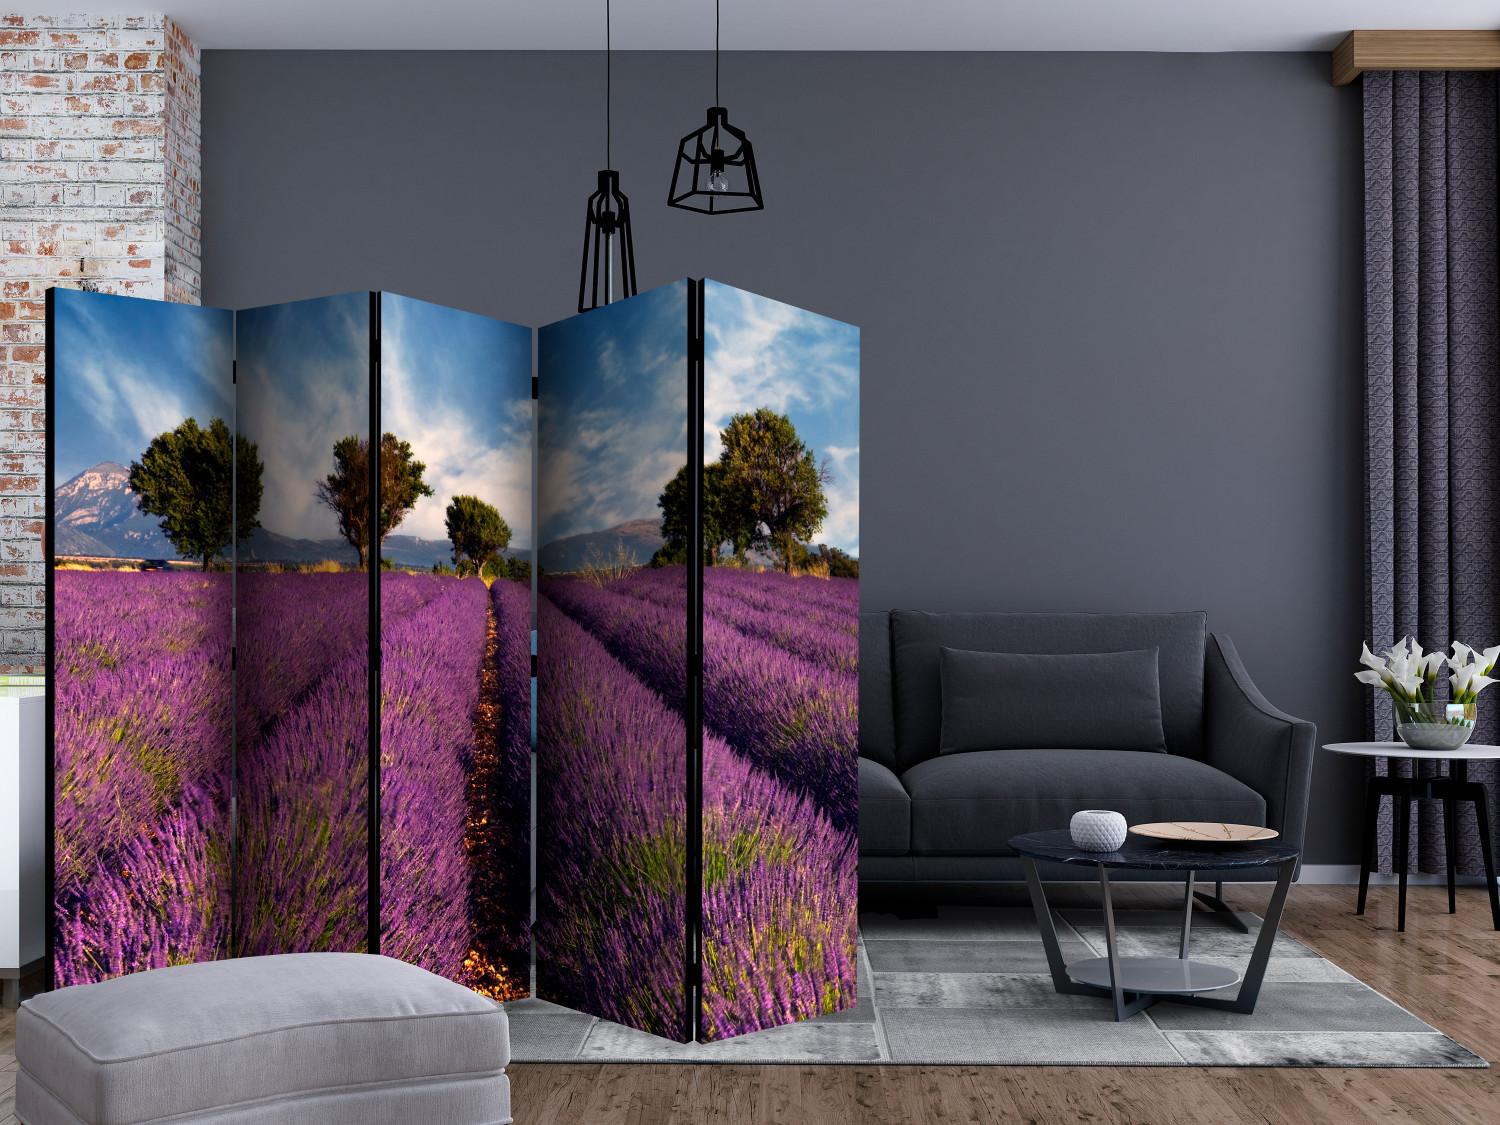 Biombo decorativo Campo de lavanda en Provenza II (5 partes) - campos de lavanda violeta